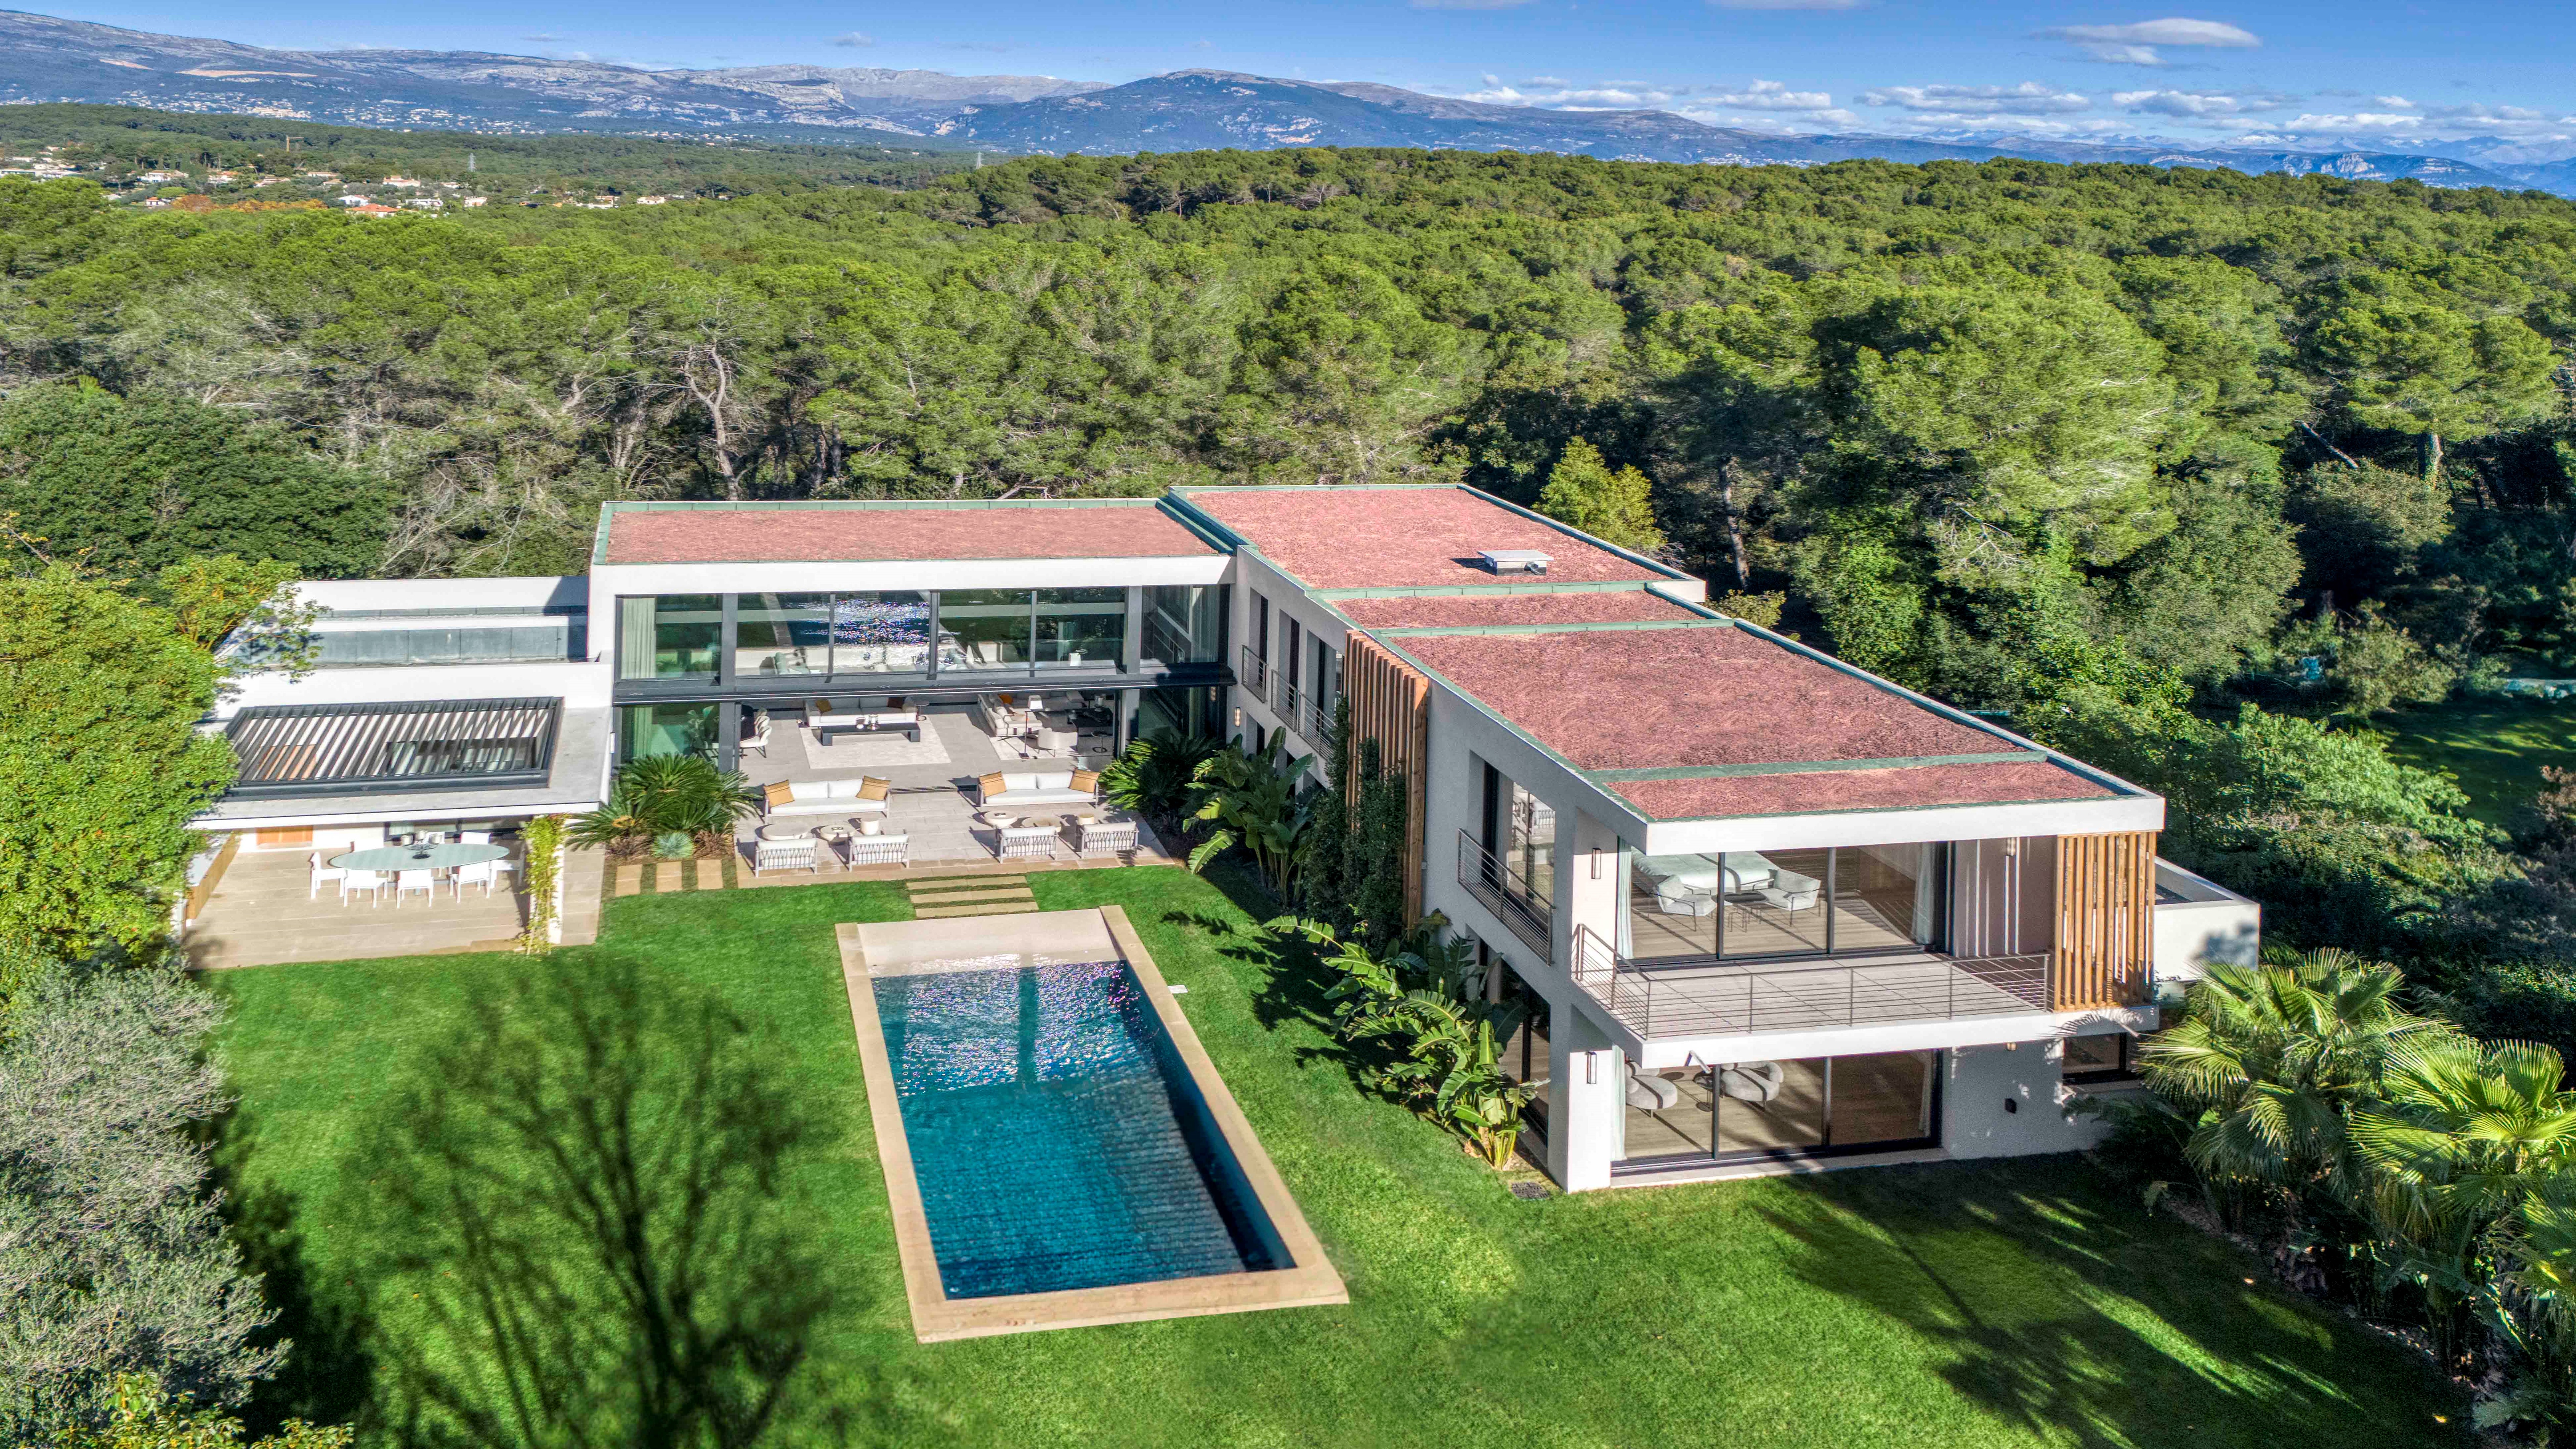 Immobilier de prestige. L'Agence Europa vous présente une luxueuse villa contemporaine sur les hauteurs de Cannes - Côte d'Azur